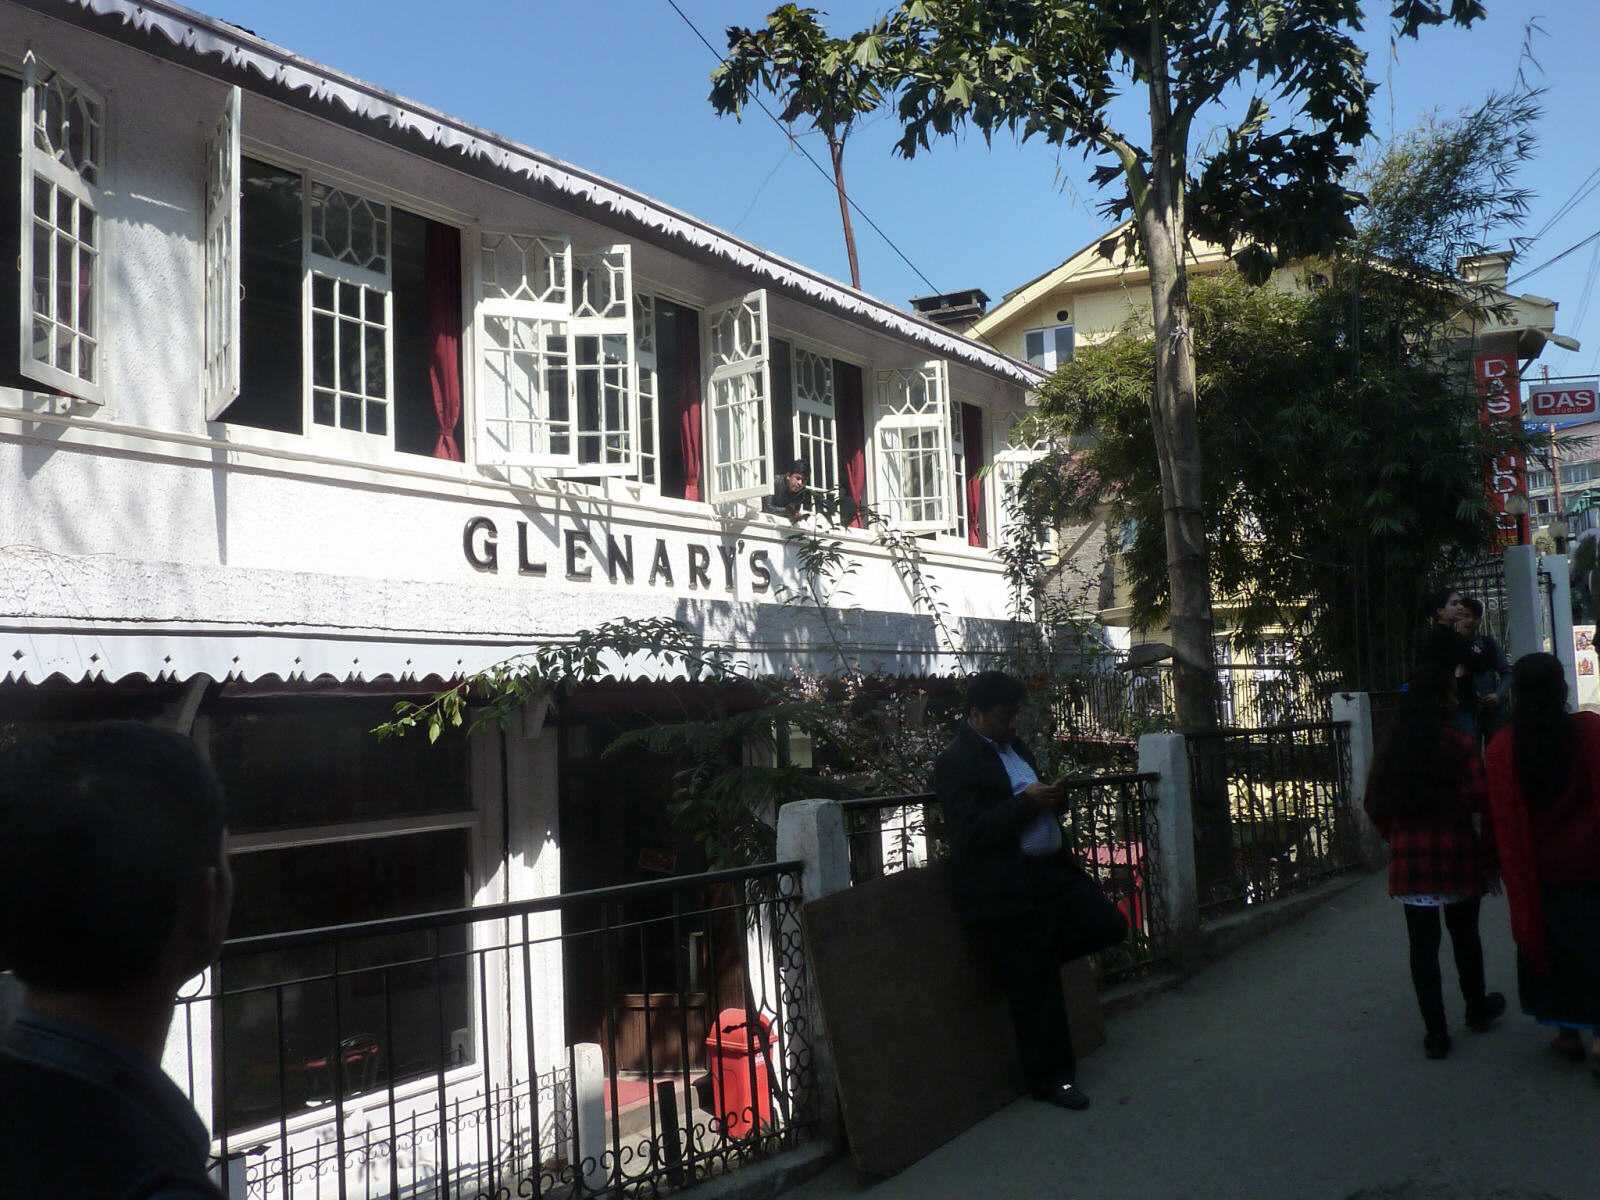 Historic Glenary's Tea Room in Darjeeling, India